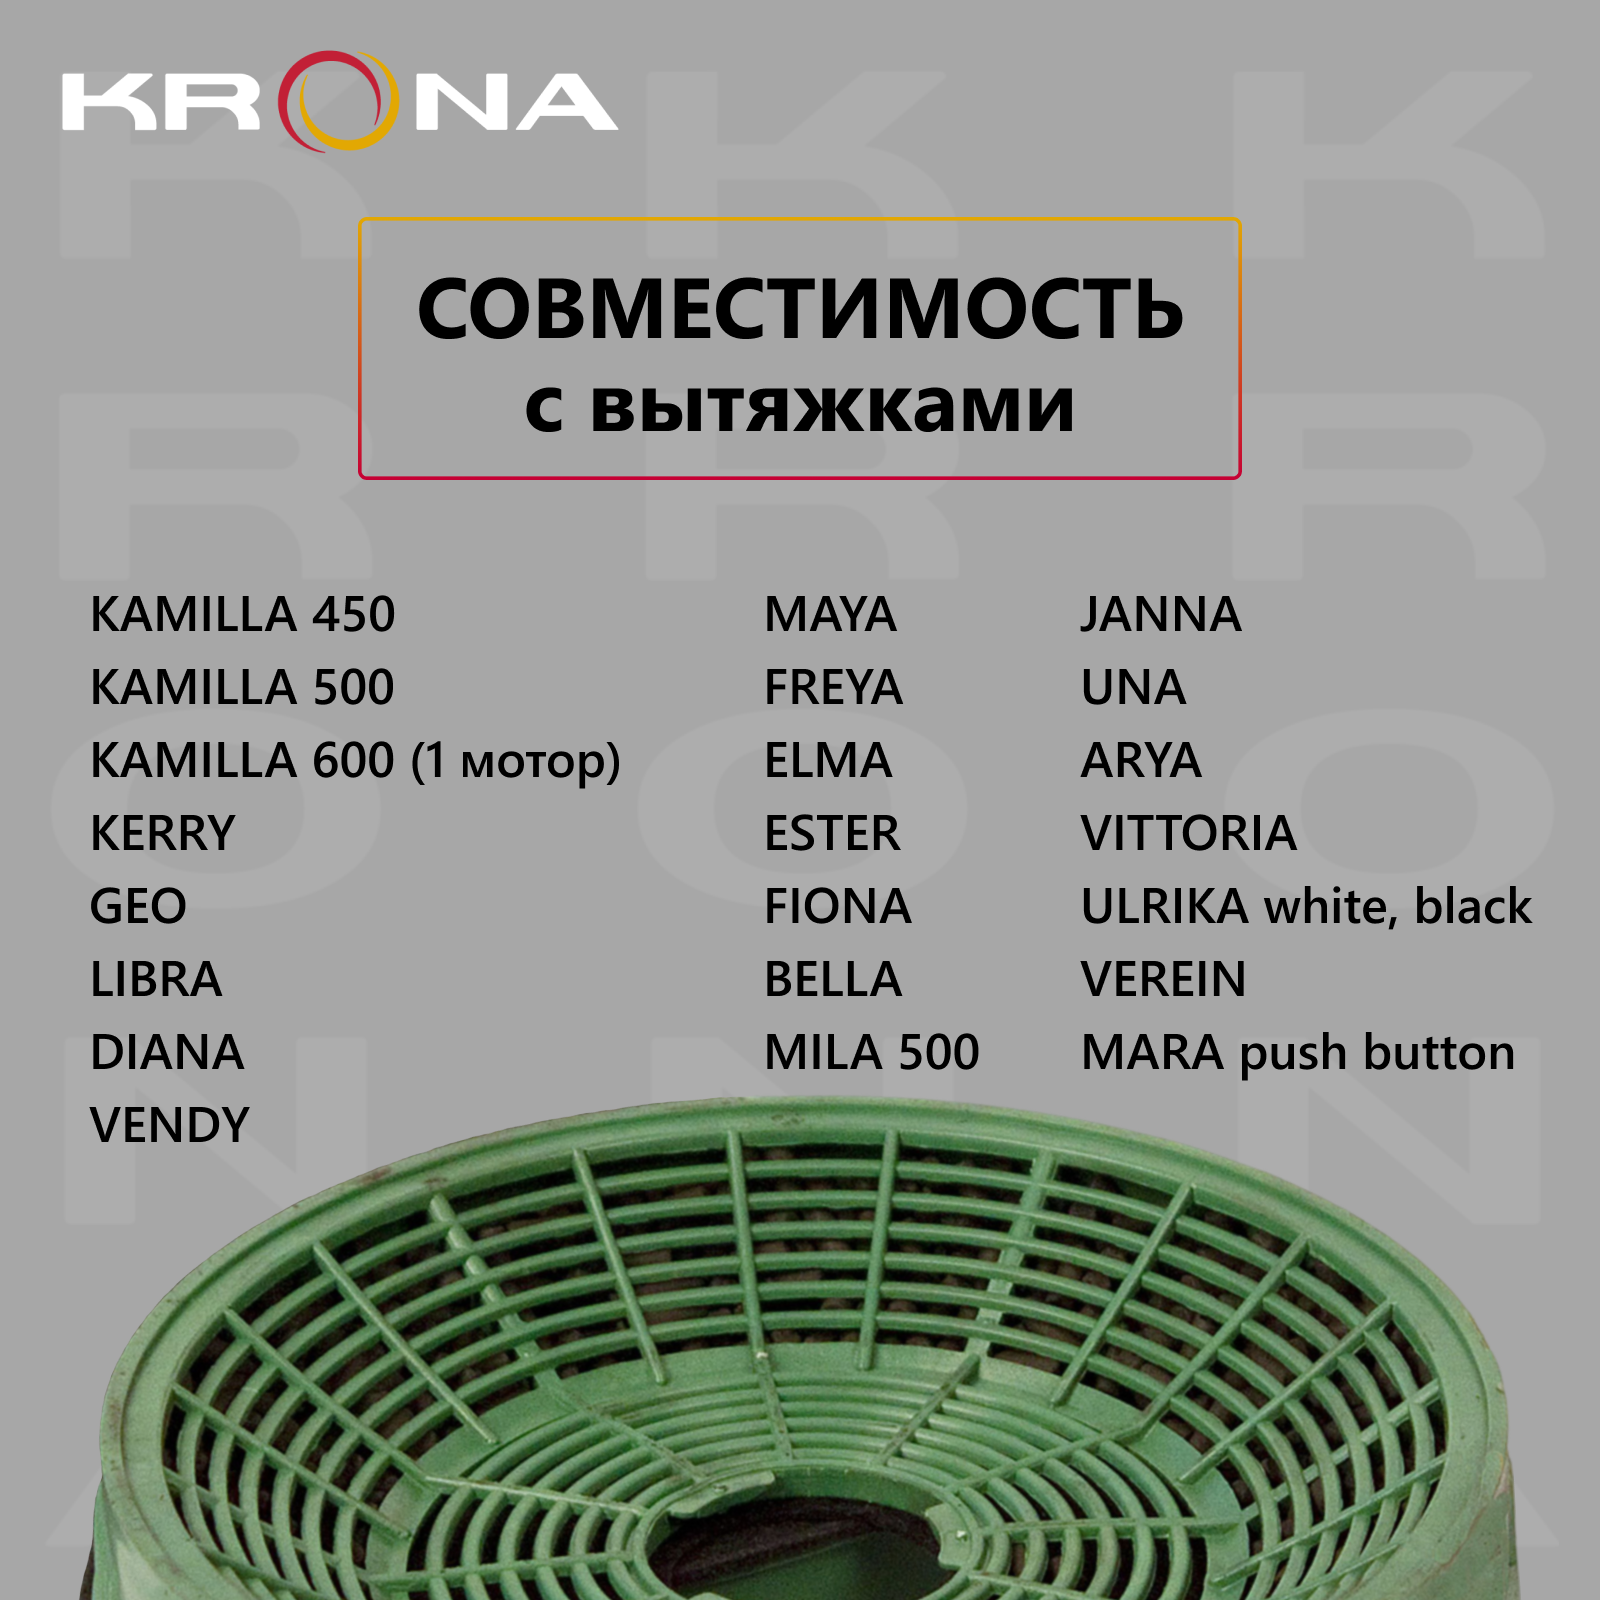 Фильтр угольный KRONA K5-2